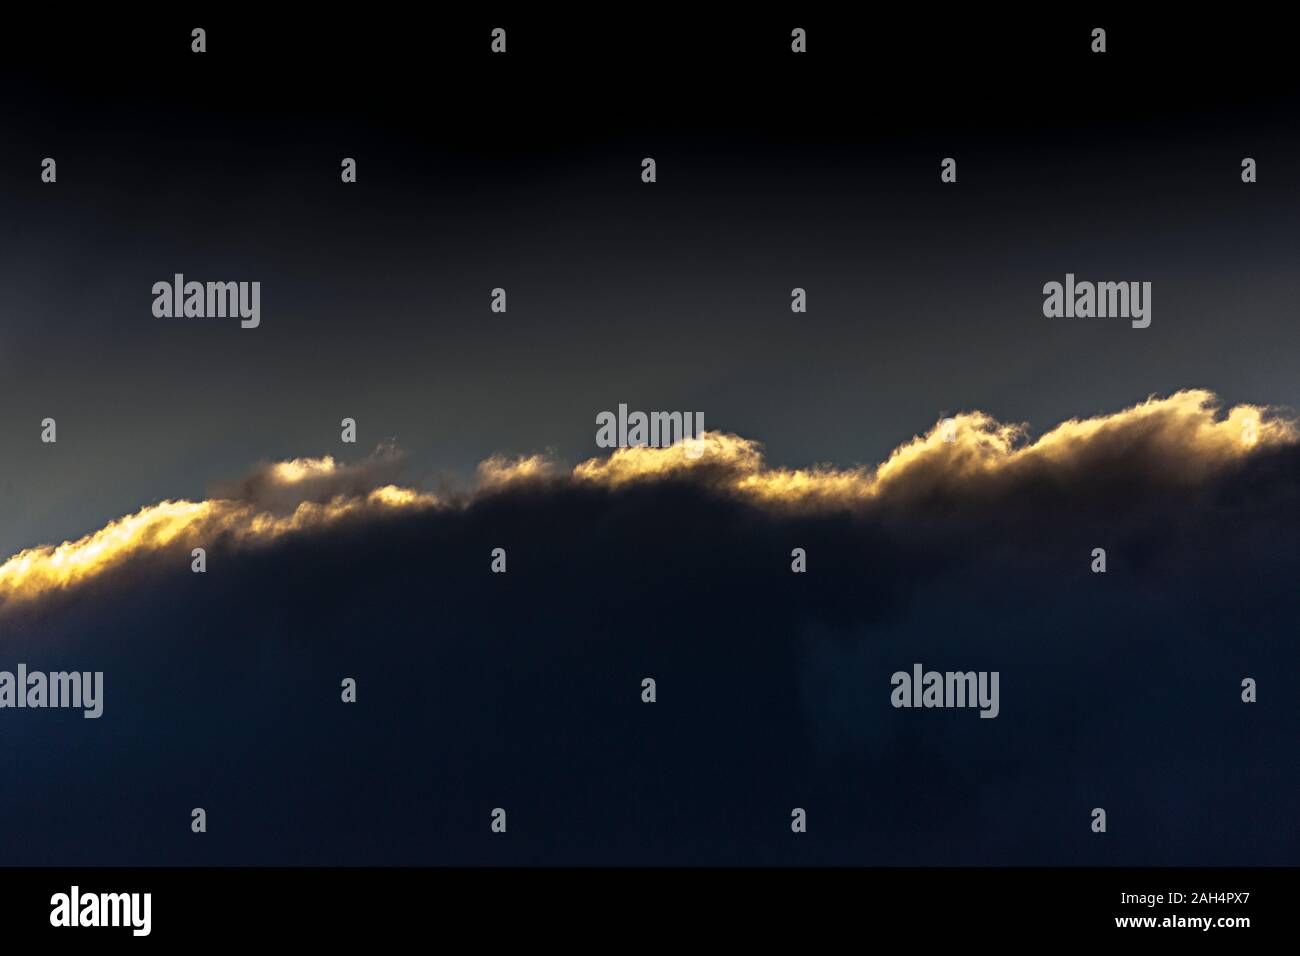 Bank von Cloud mit Sonnenuntergang Highlights gegen den dunklen Himmel Stockfoto